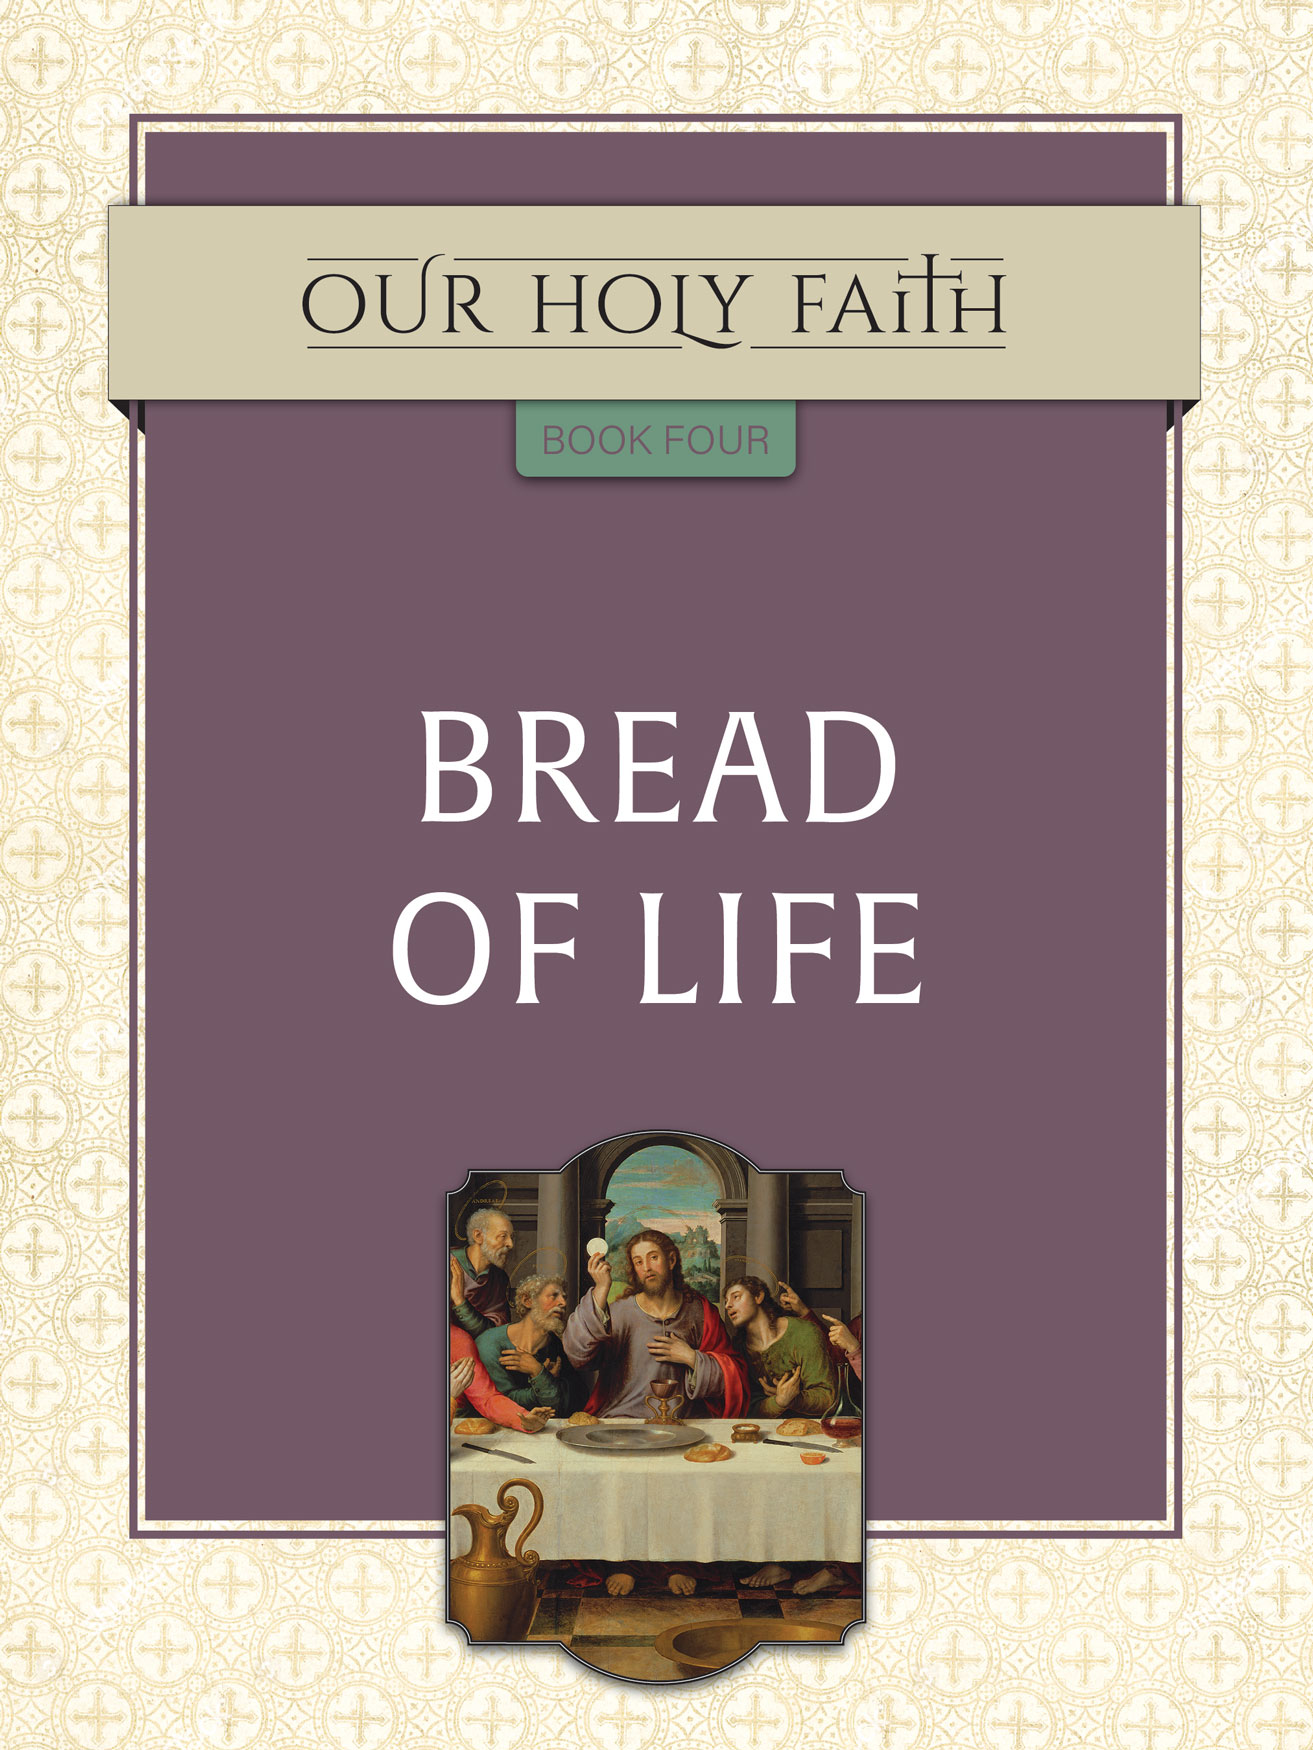 Our Holy Faith Book 4 Bread of Life